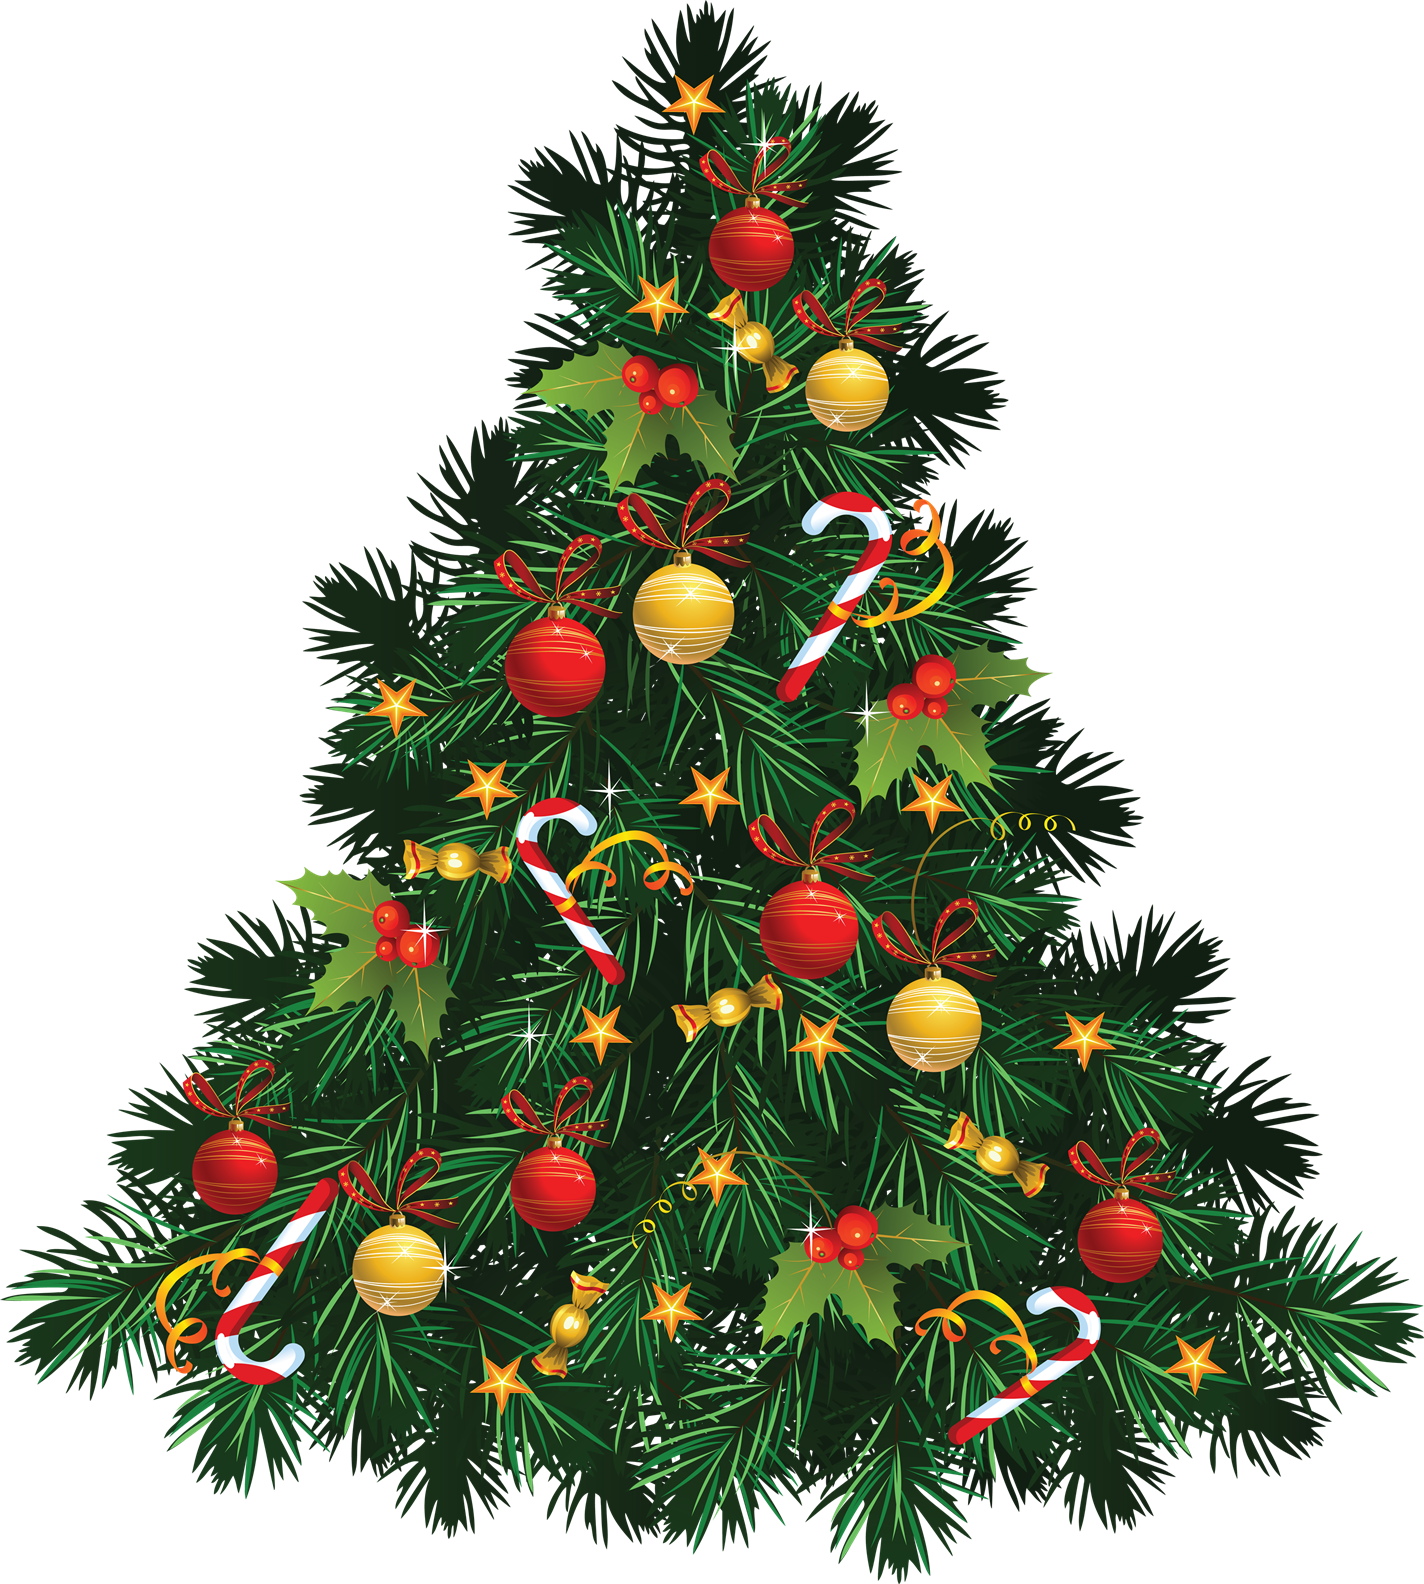 Christmas Tree Image PNG Image